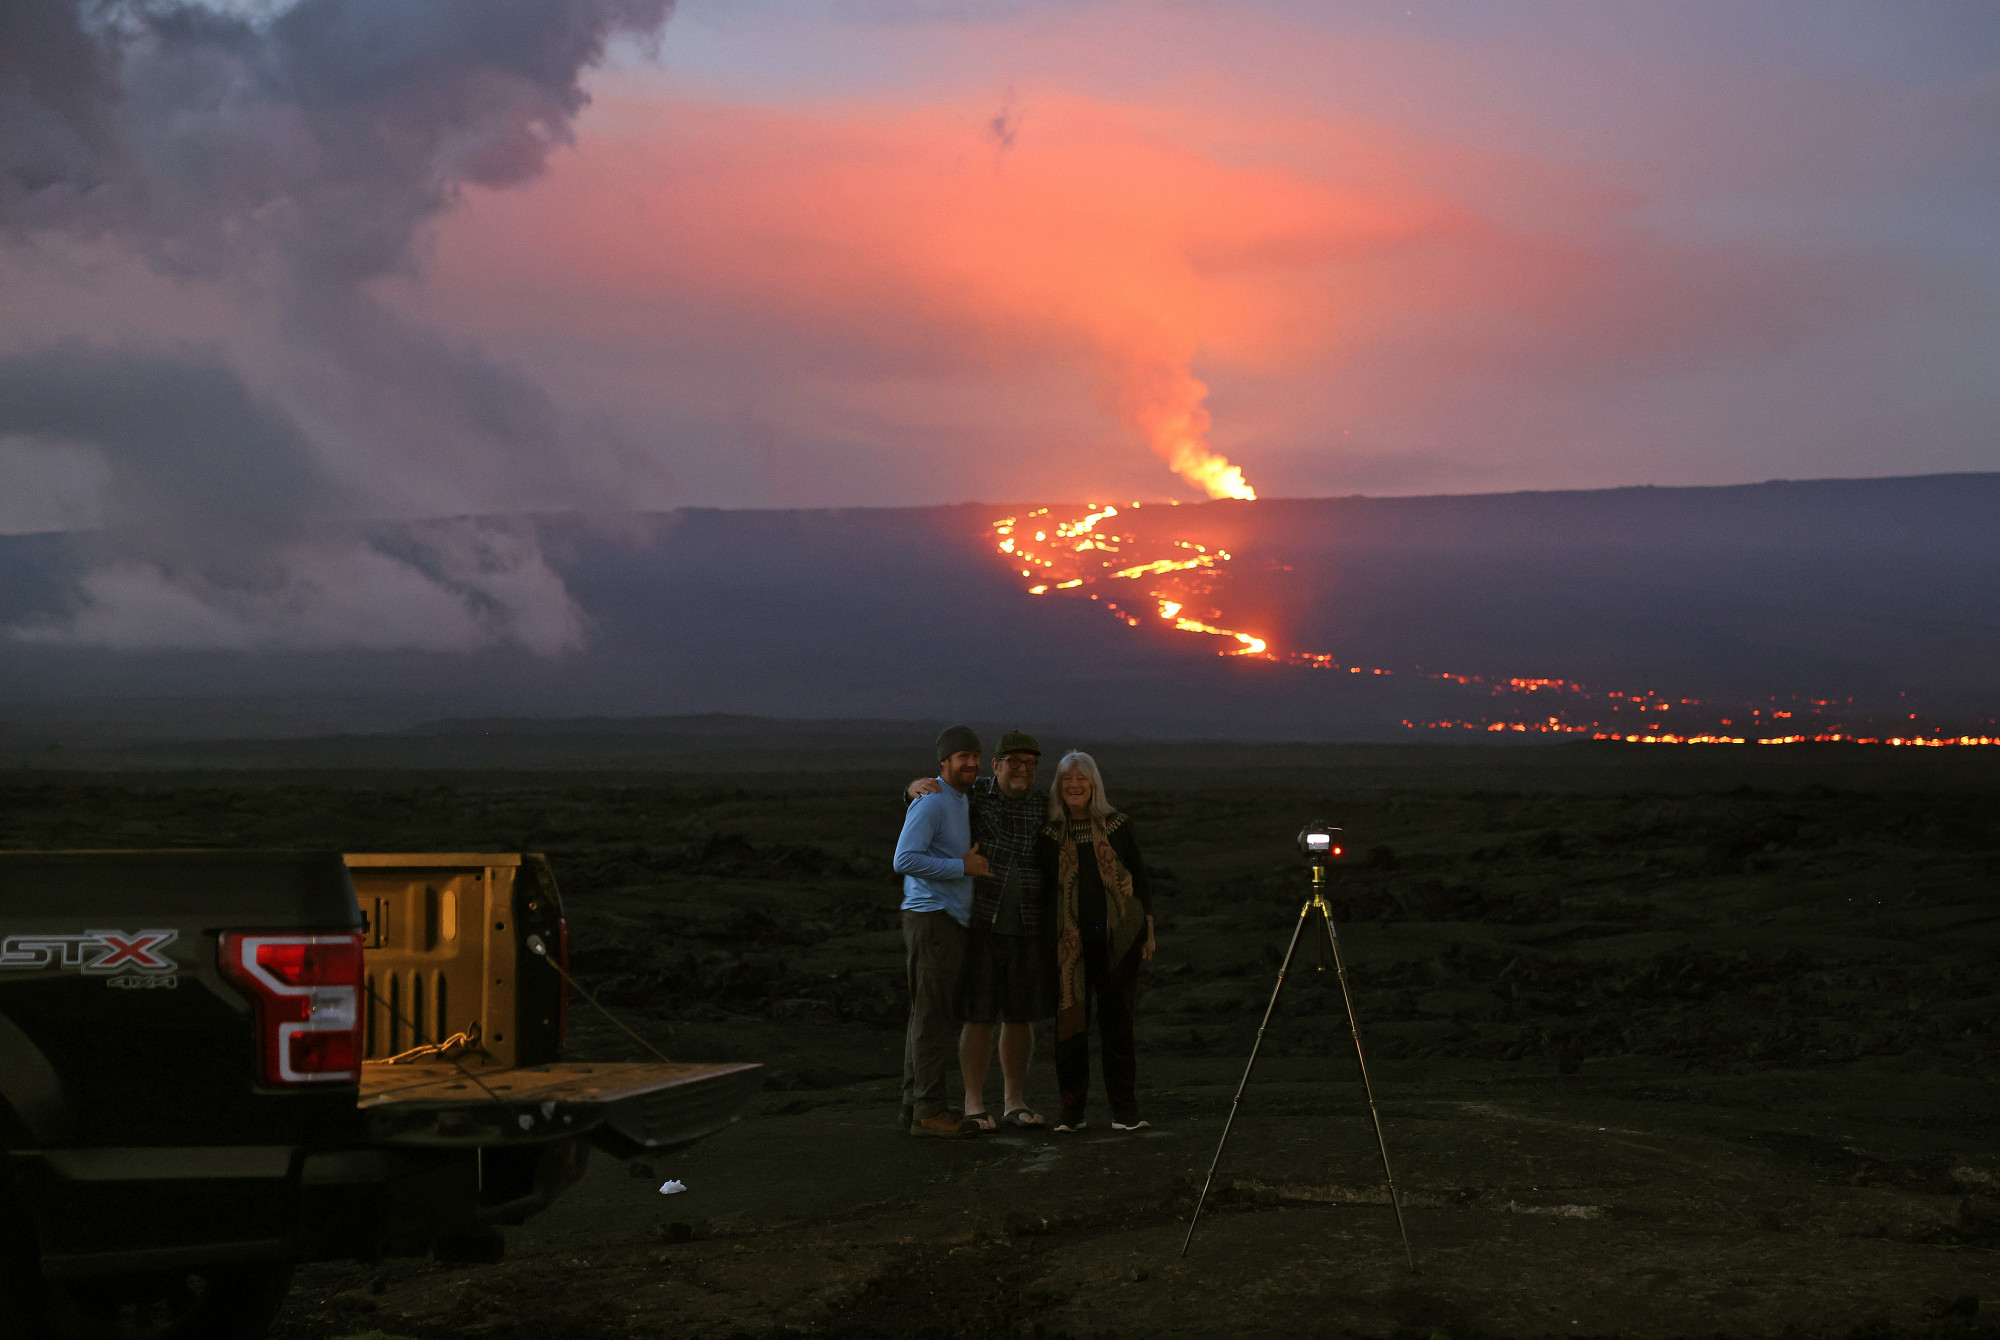 Élő közvetítés a világ legnagyobb, tizedik napja lávát lövellő vulkánjáról